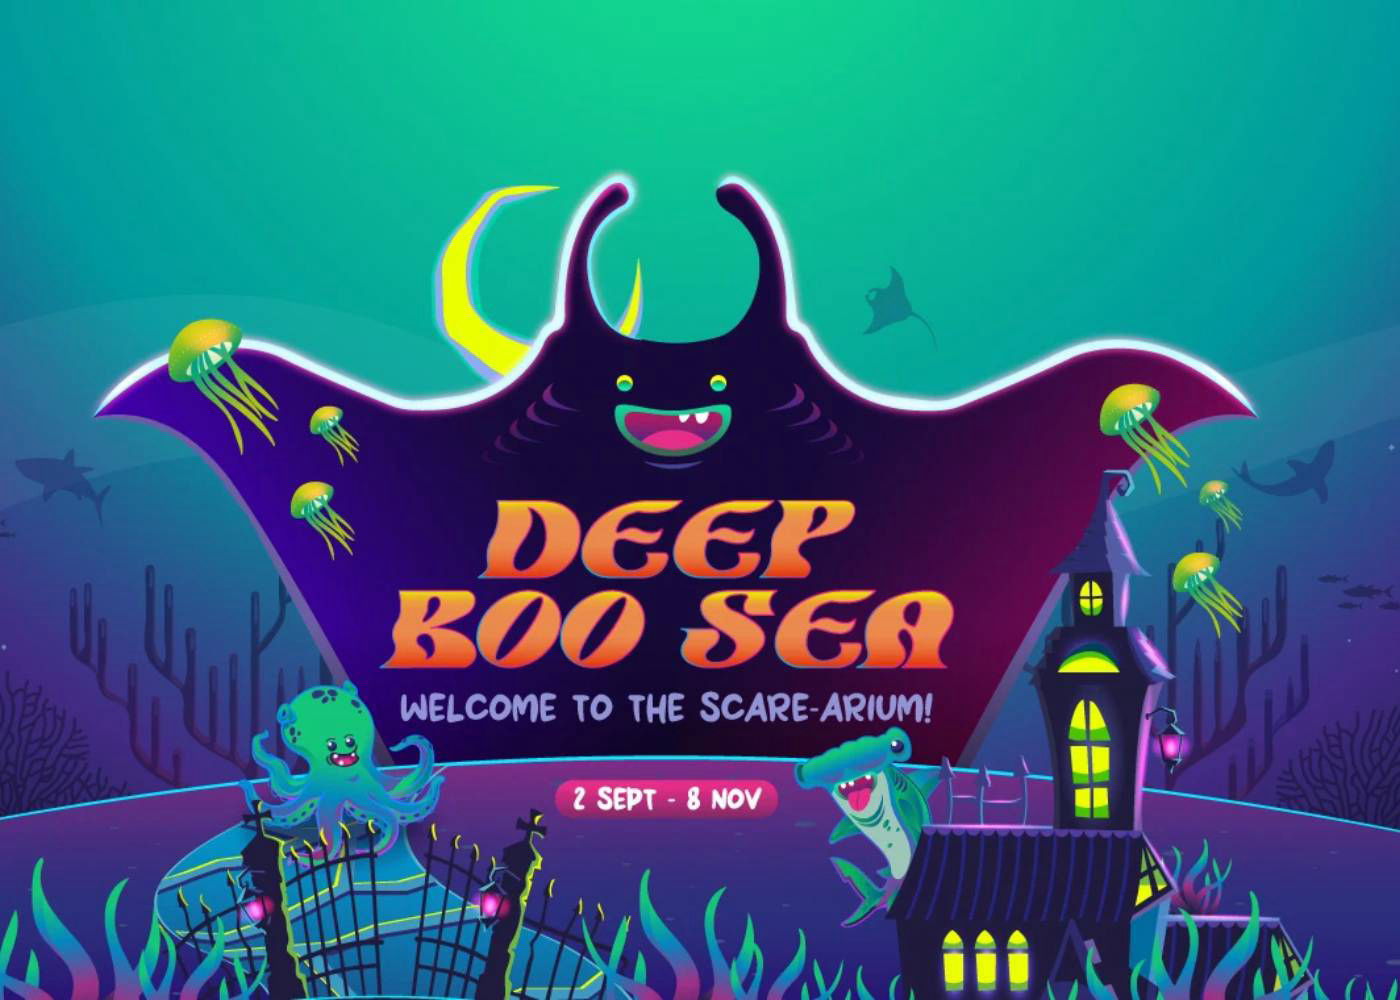 Deep boo sea